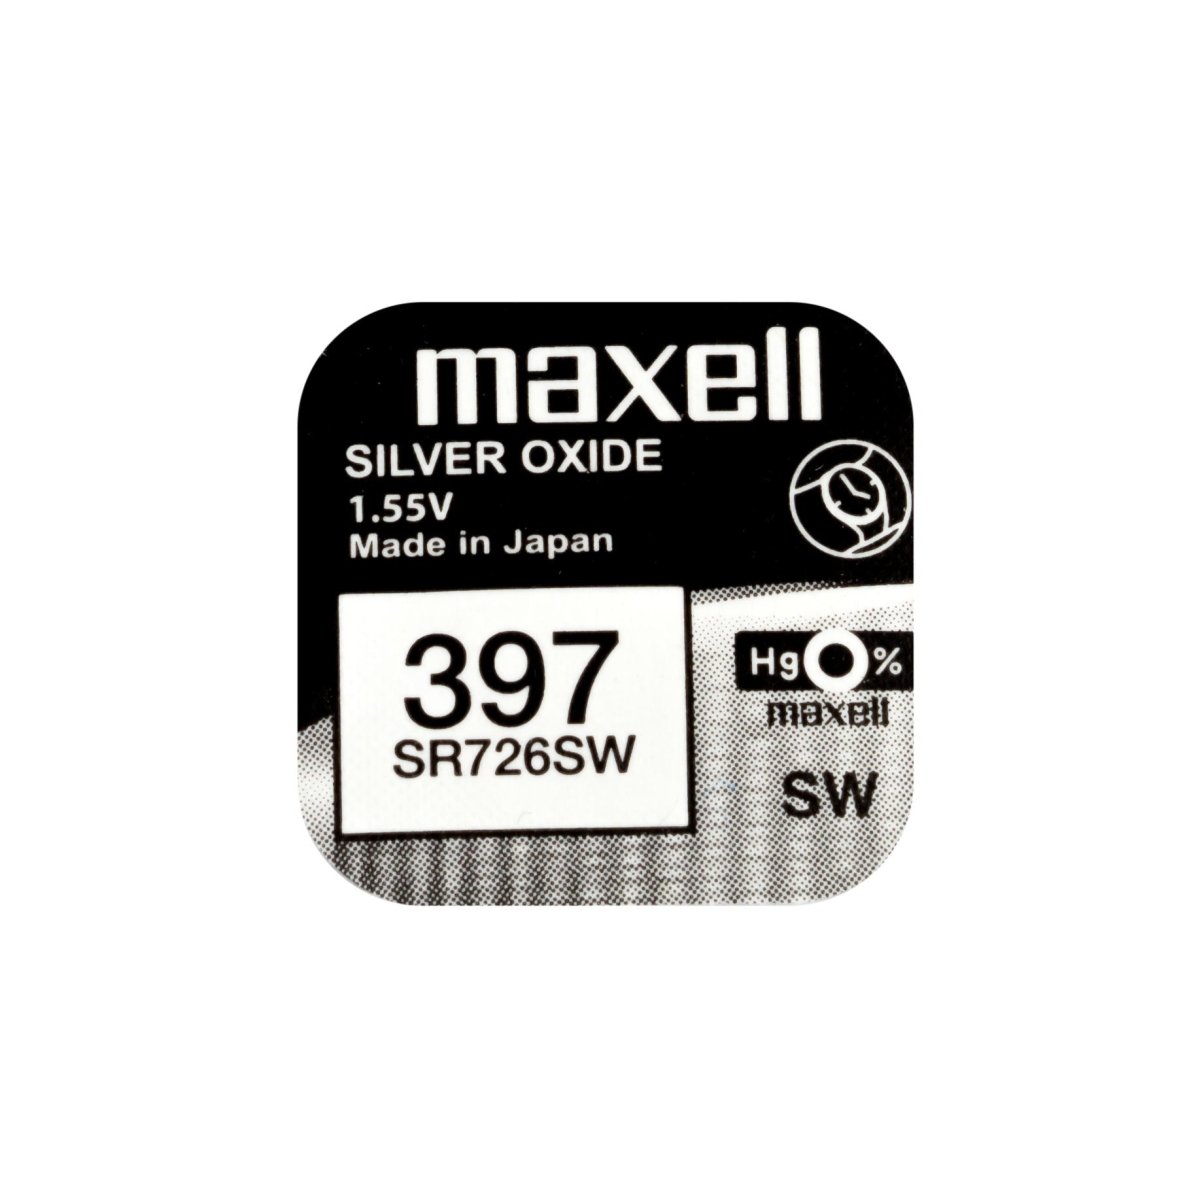 10x Maxell 397 Pila Botón Oxido de Plata SR726SW 1.55V - movilcom.com